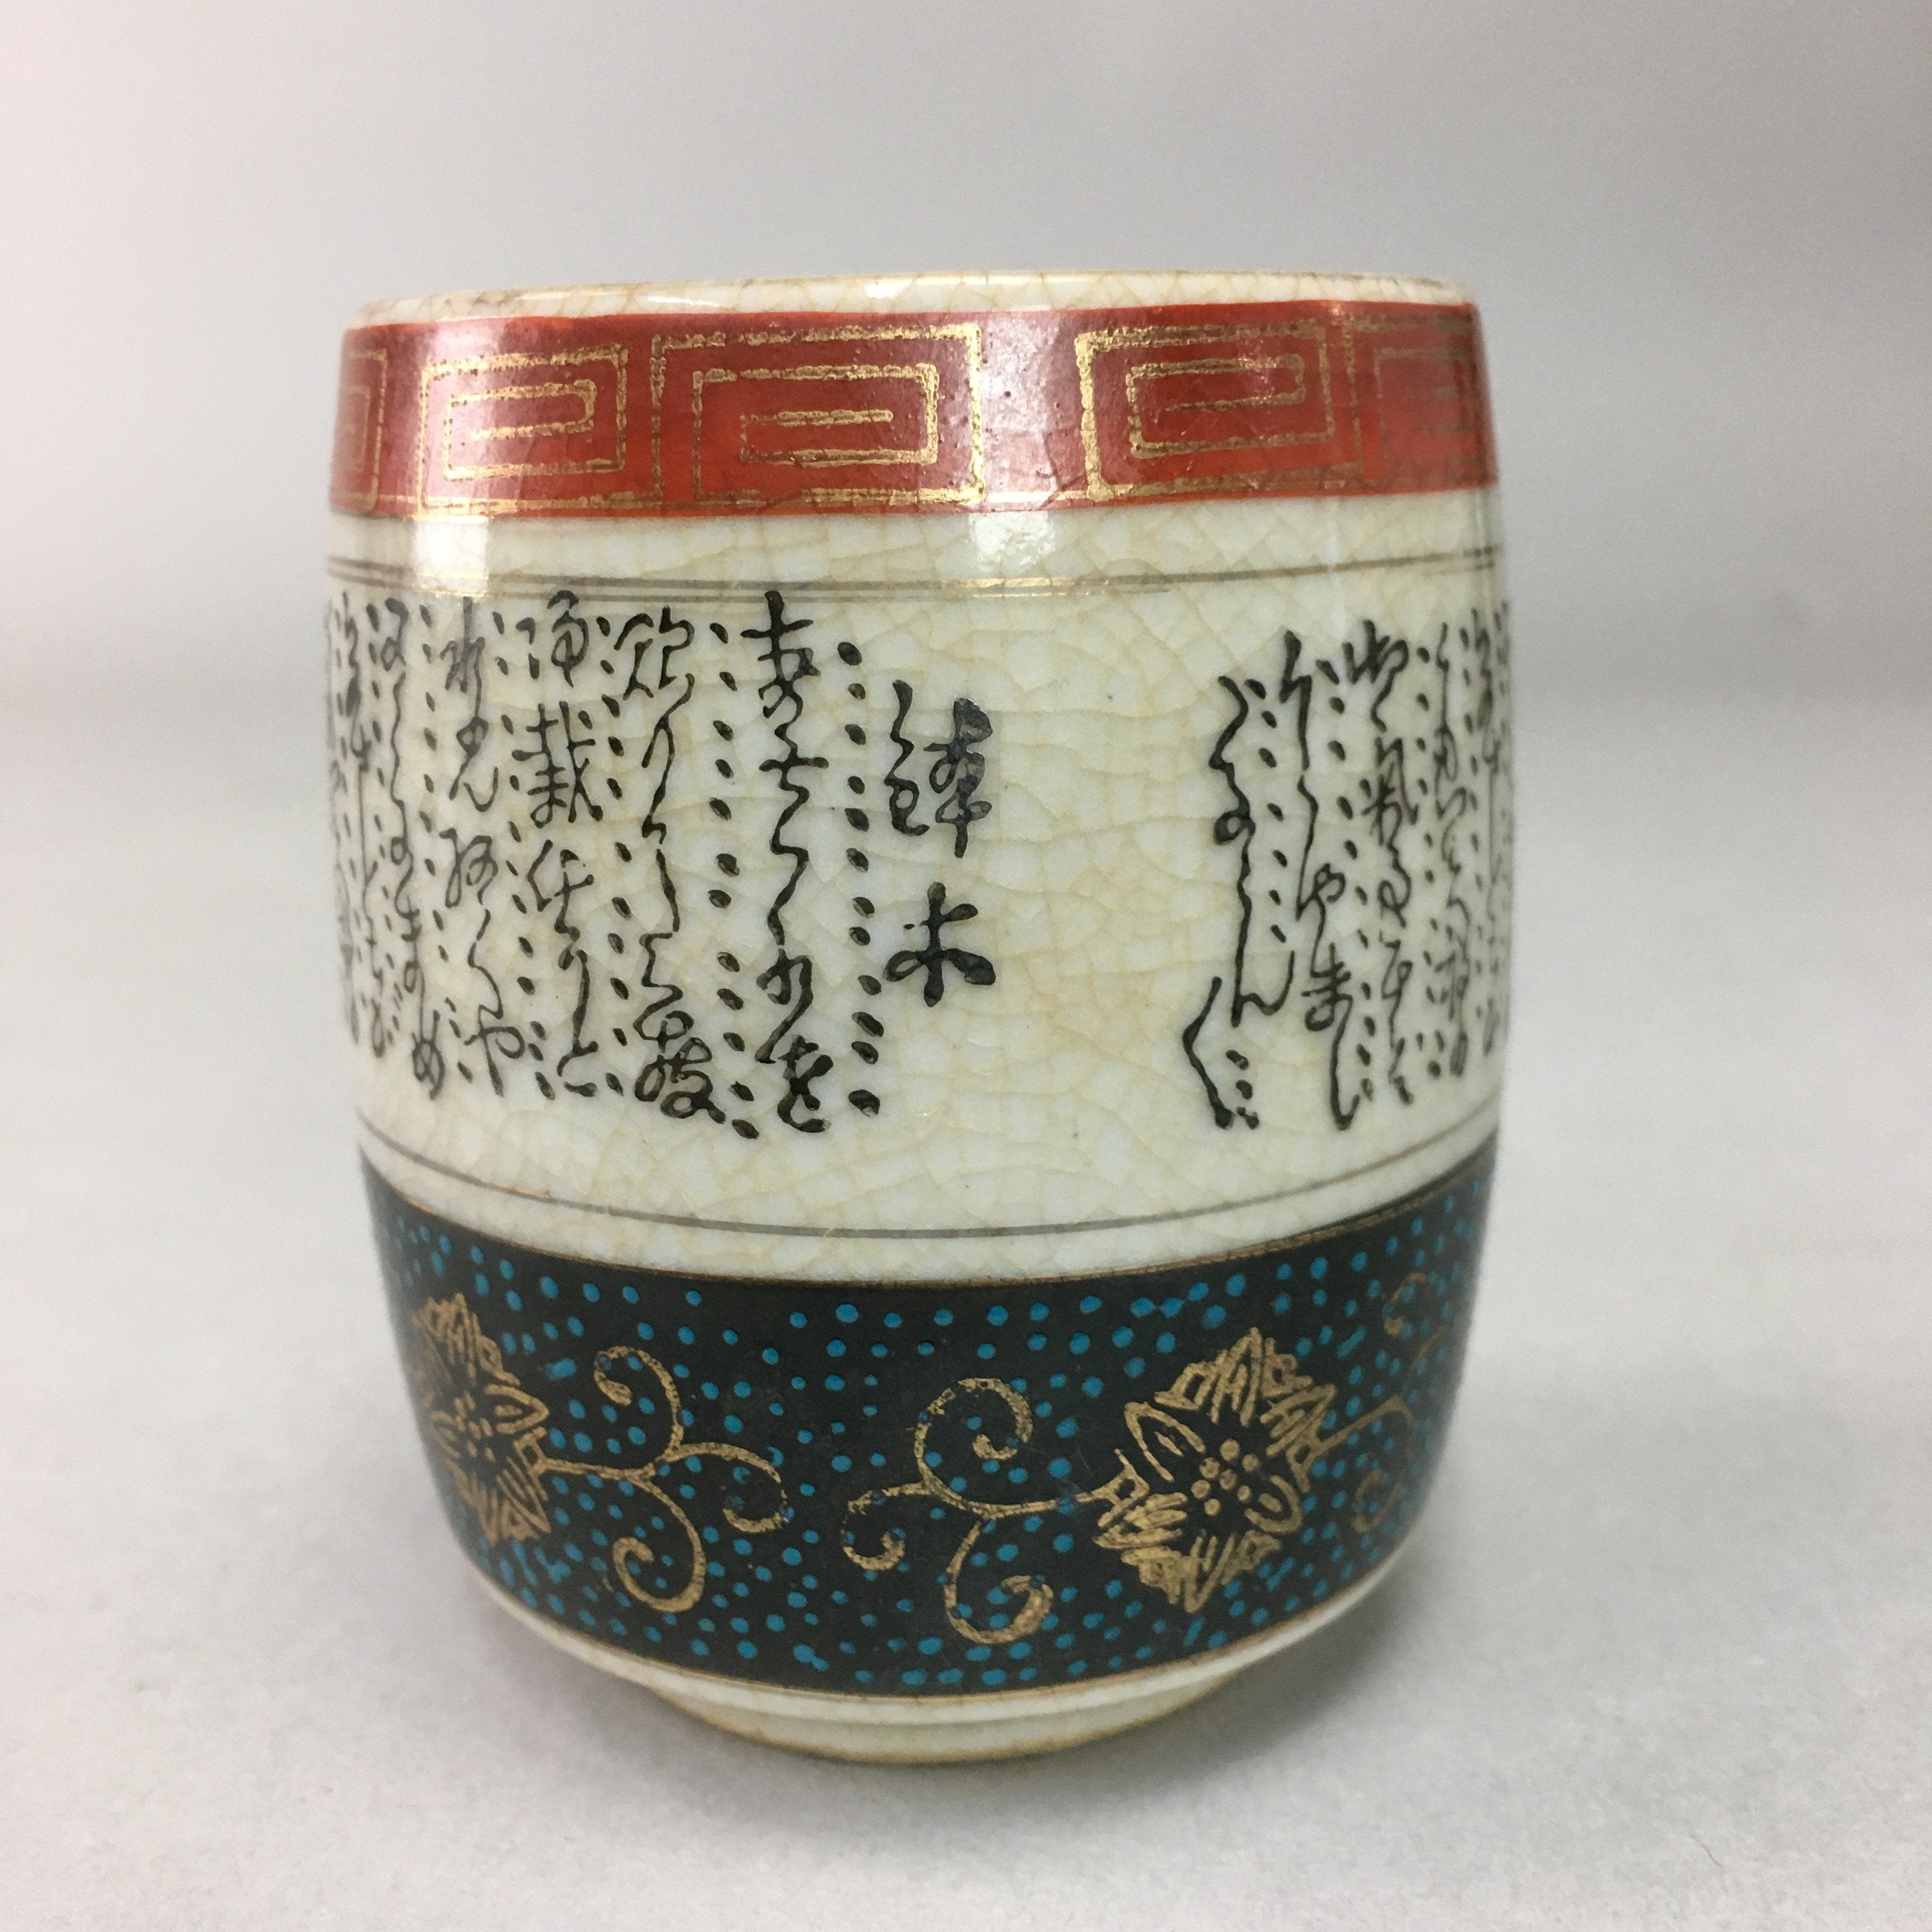 Japanese Ceramic Teacup Kutani ware Yunomi Vtg Pottery Sencha TC98